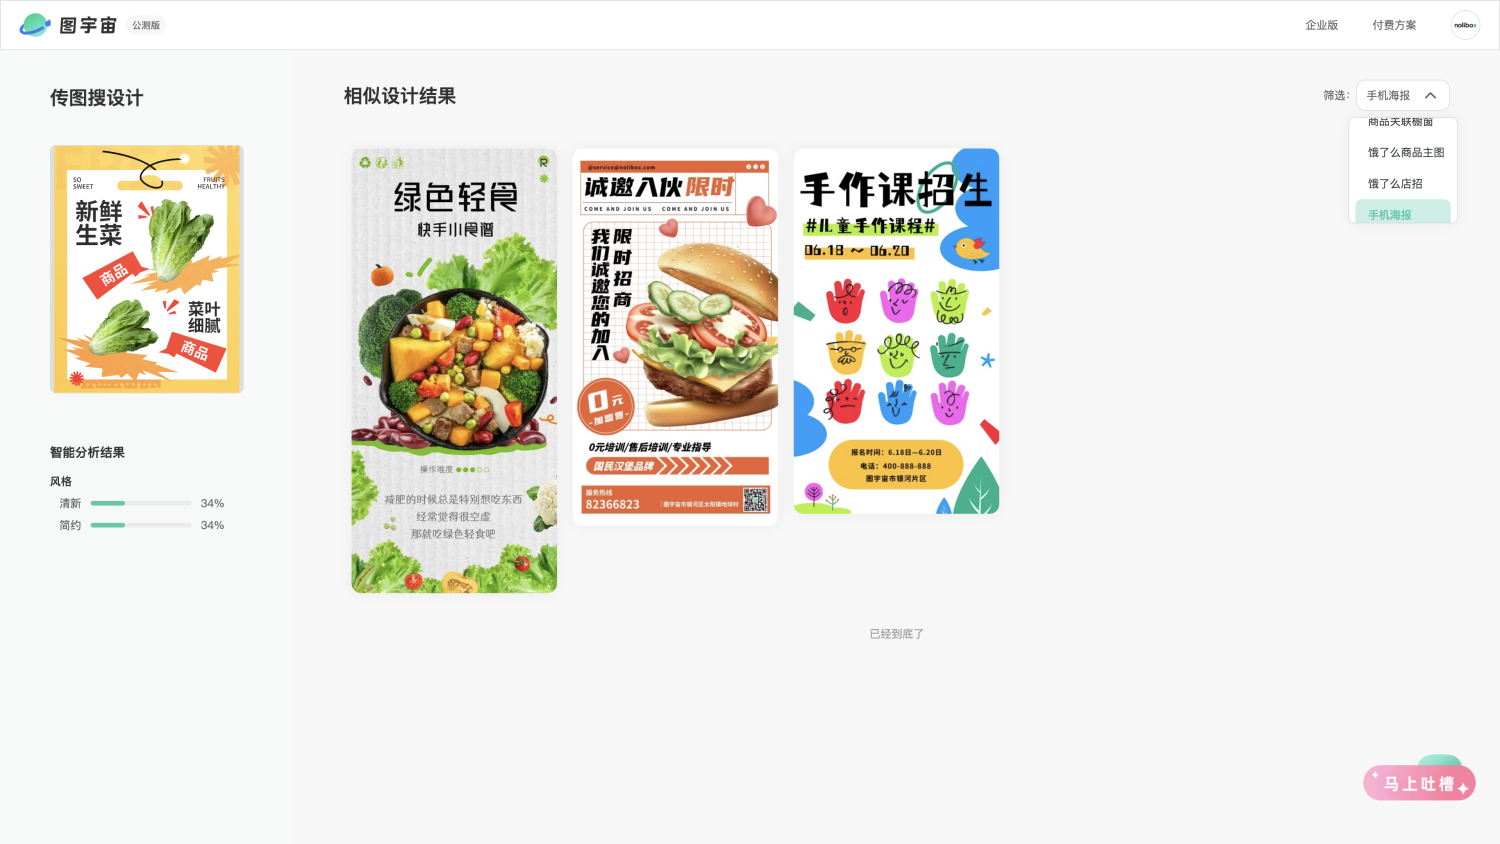 图宇宙-「生菜」手机海报模板中心结果展示